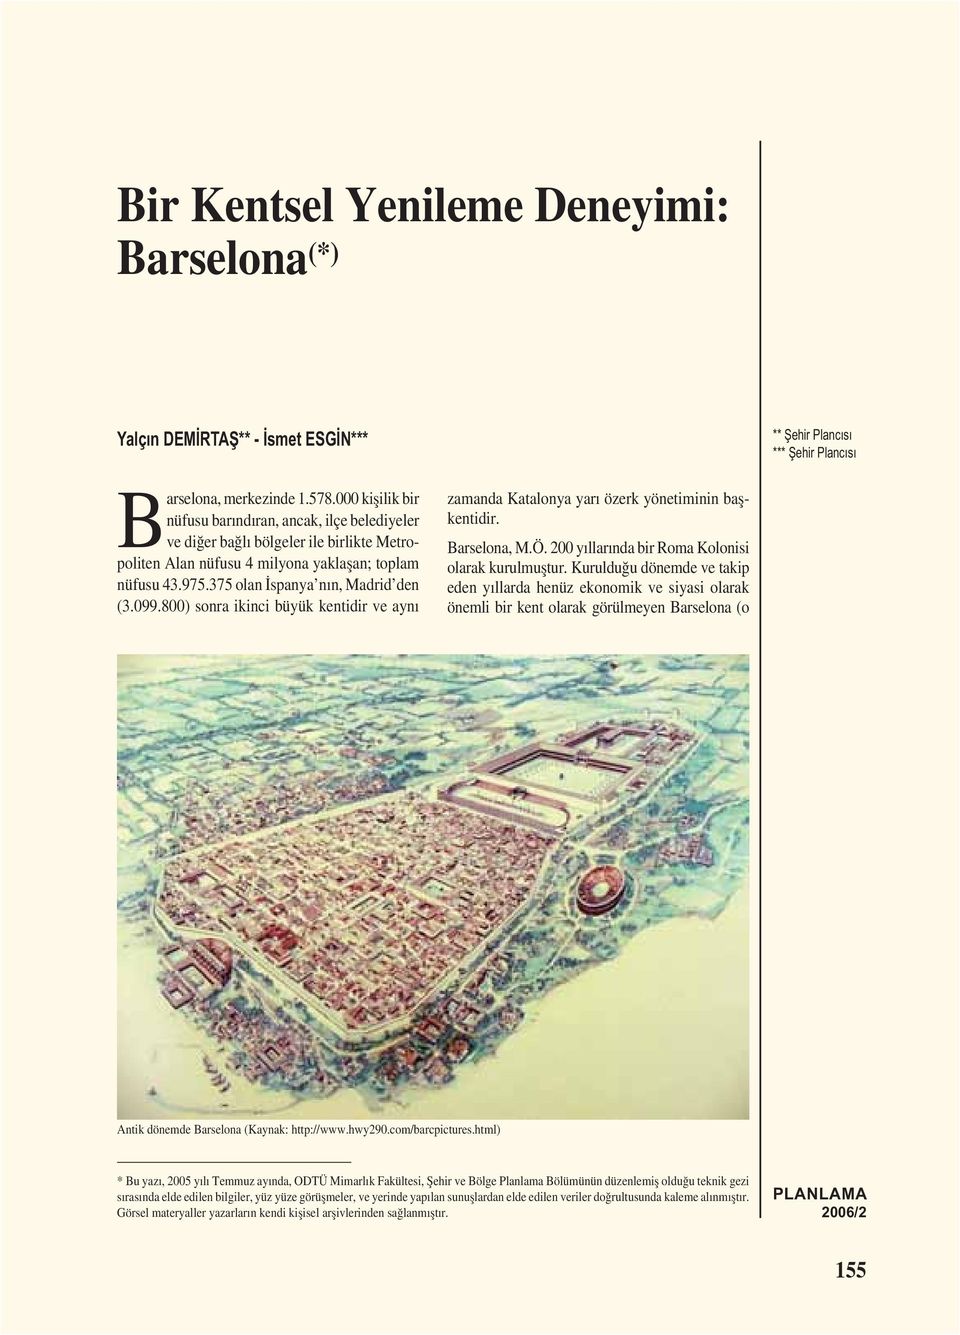 099.800) sonra ikinci büyük kentidir ve aynı zamanda Katalonya yarı özerk yönetiminin bașkentidir. Barselona, M.Ö. 200 yıllarında bir Roma Kolonisi olarak kurulmuștur.